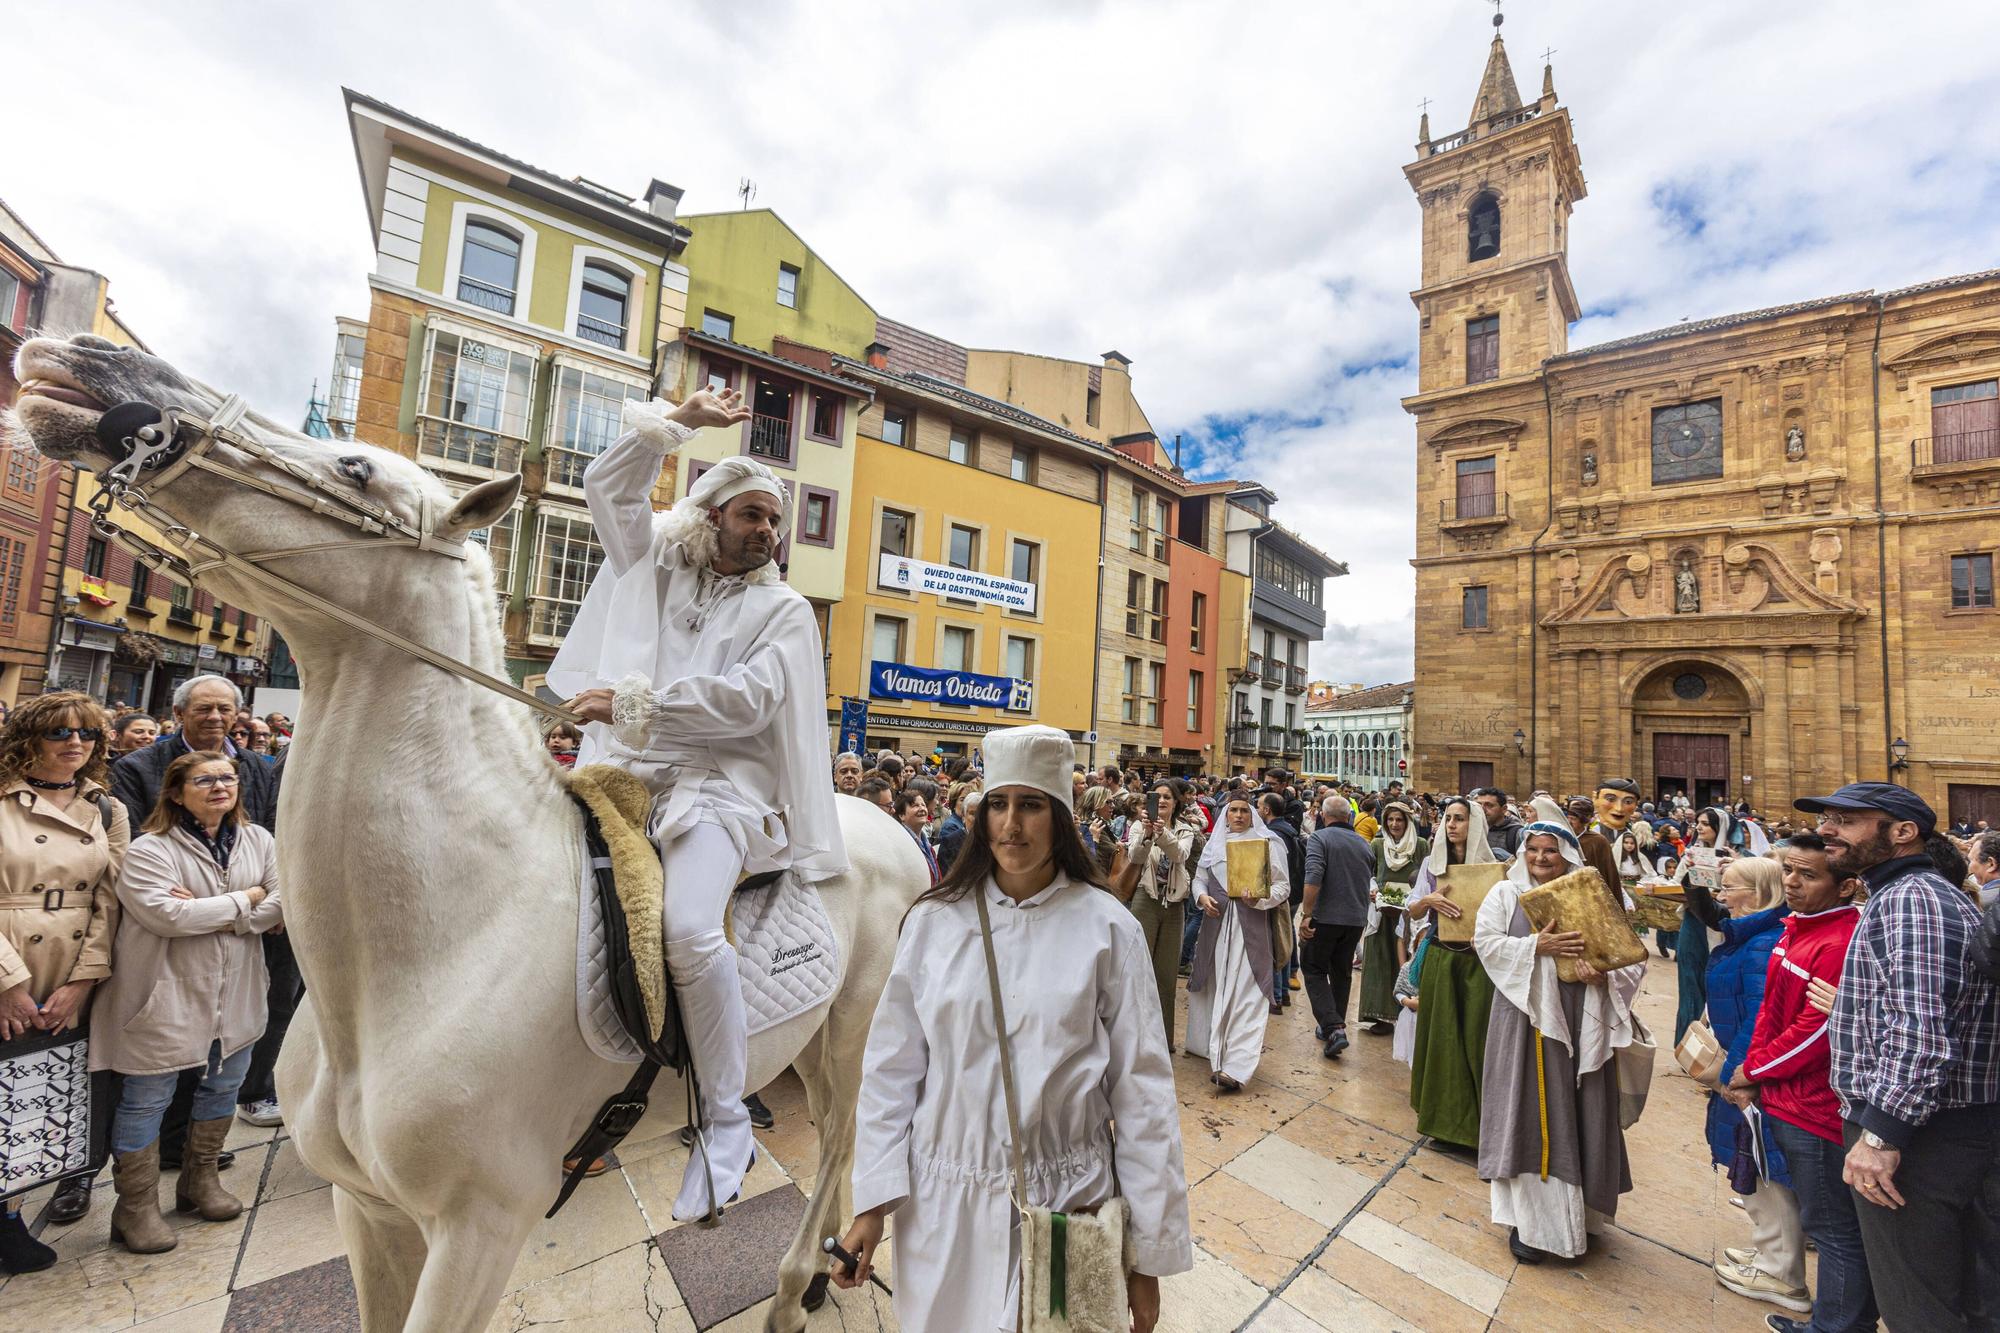 En imágenes | Cabalgata del Heraldo por las calles de Oviedo